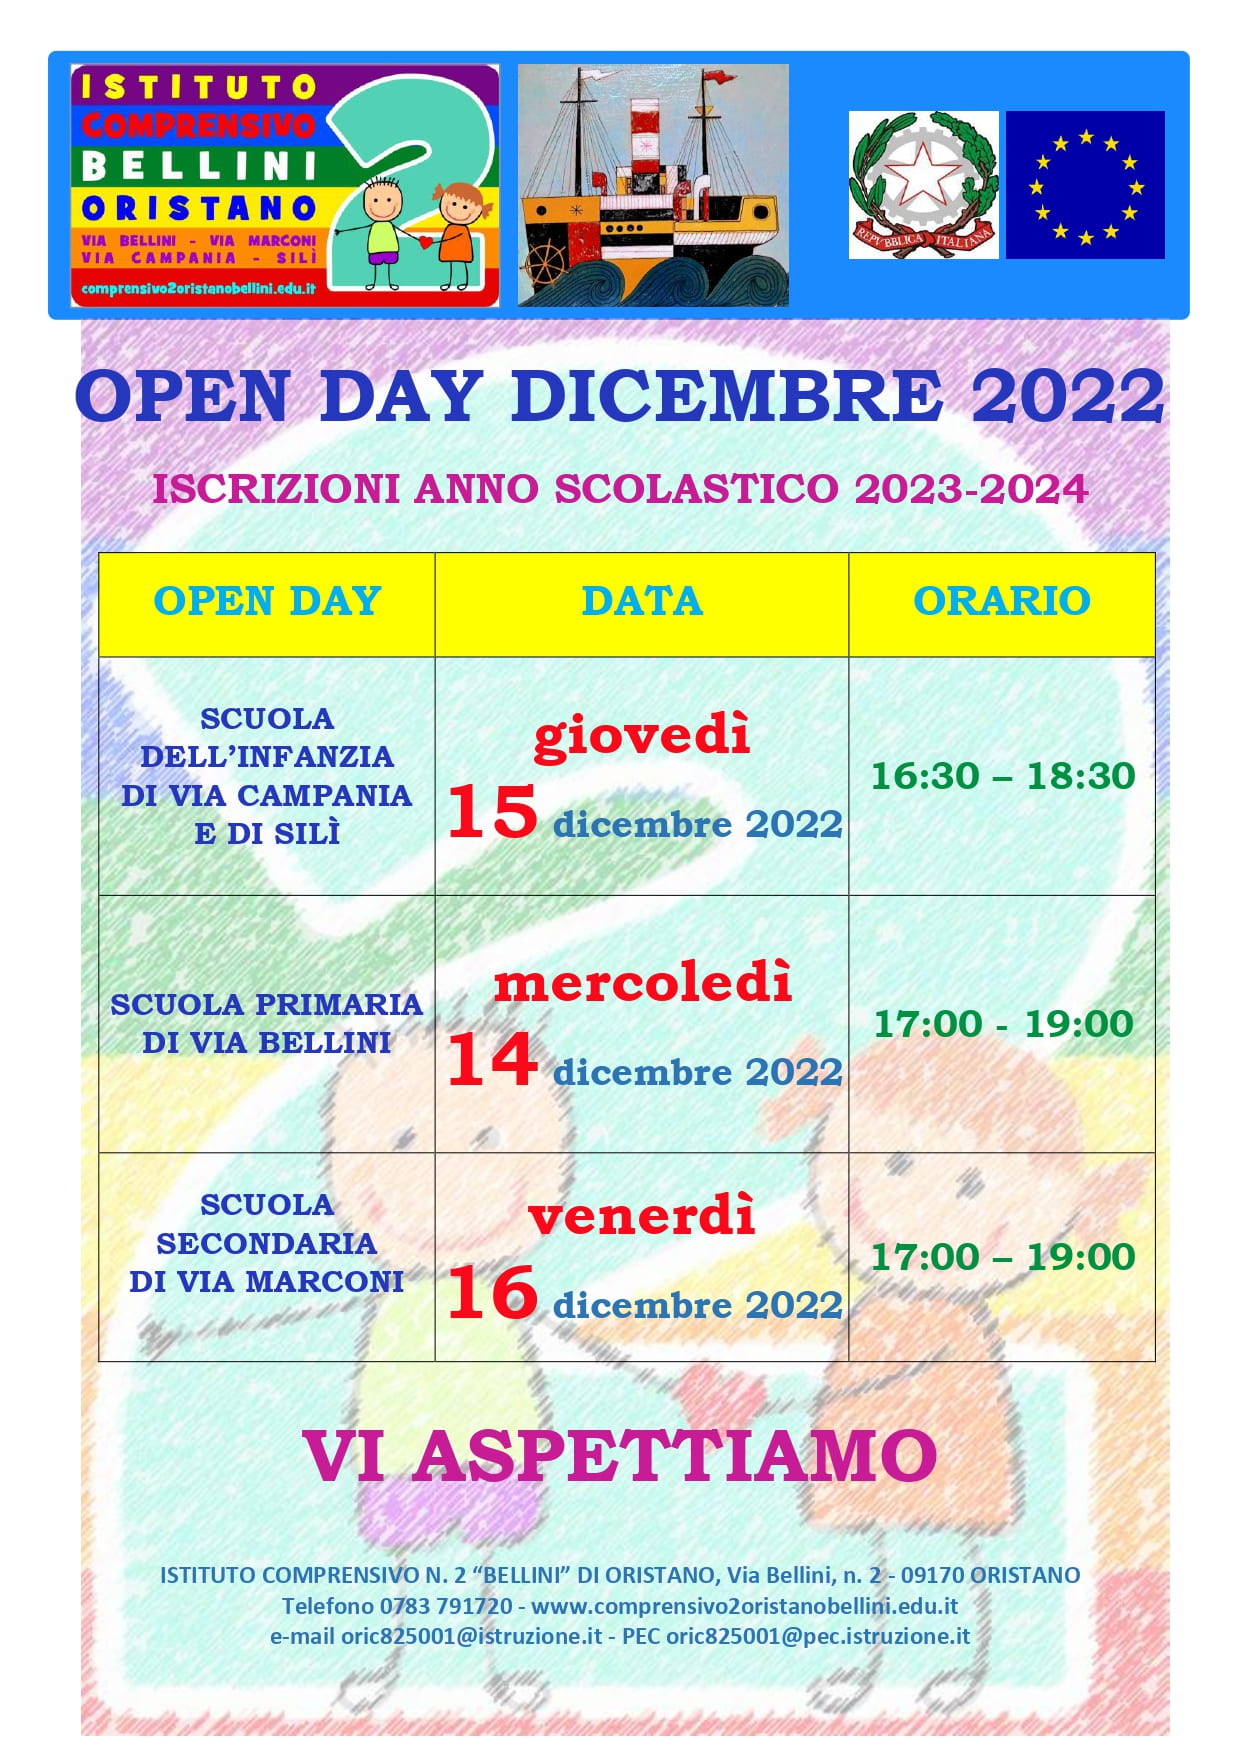 LOCANDINA OPEN DAY DICEMBRE 2022 page 0001